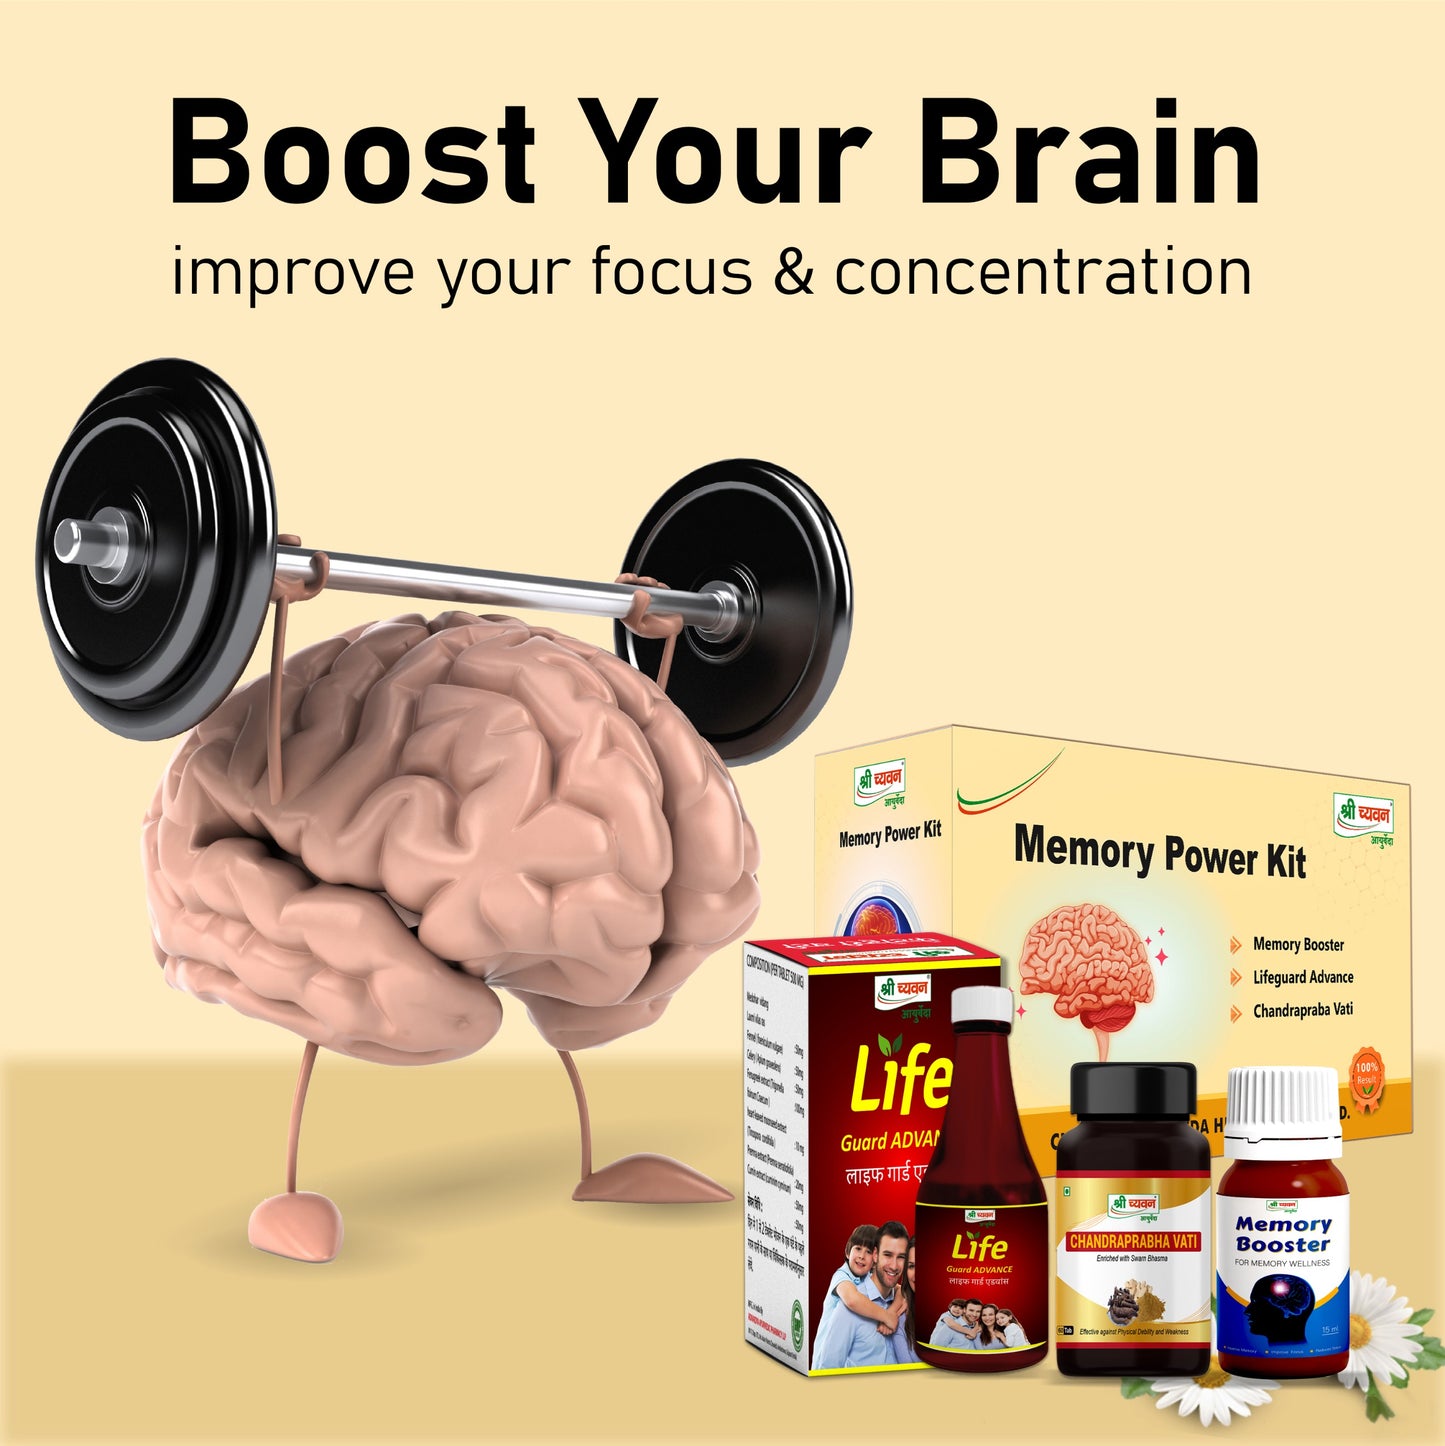 memory power kit for brain health